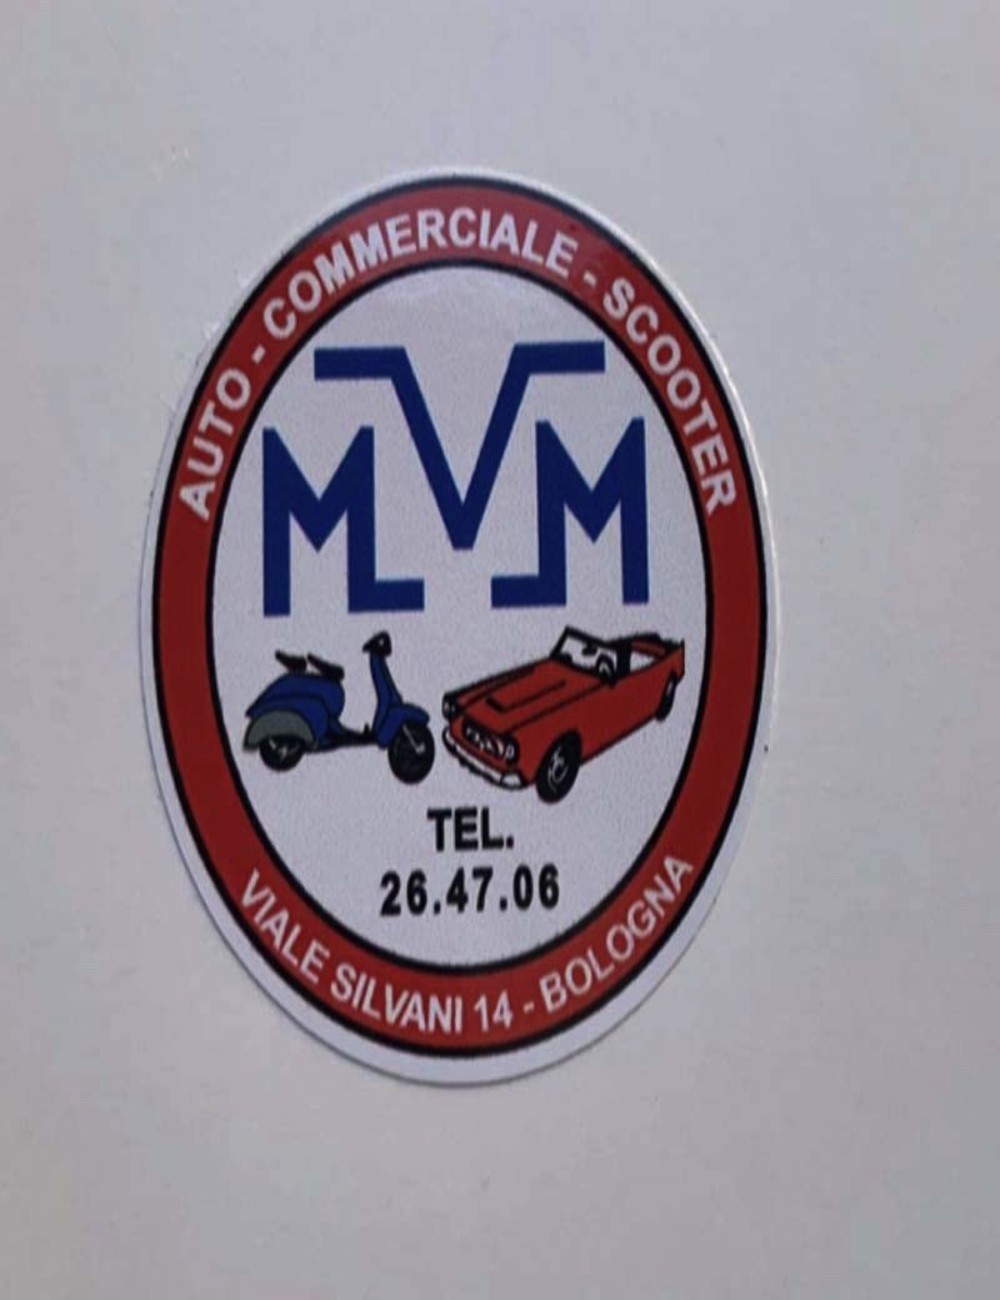 Adesivo concessionario MVM. Dimensioni 4,8 cm x 5,2 cm